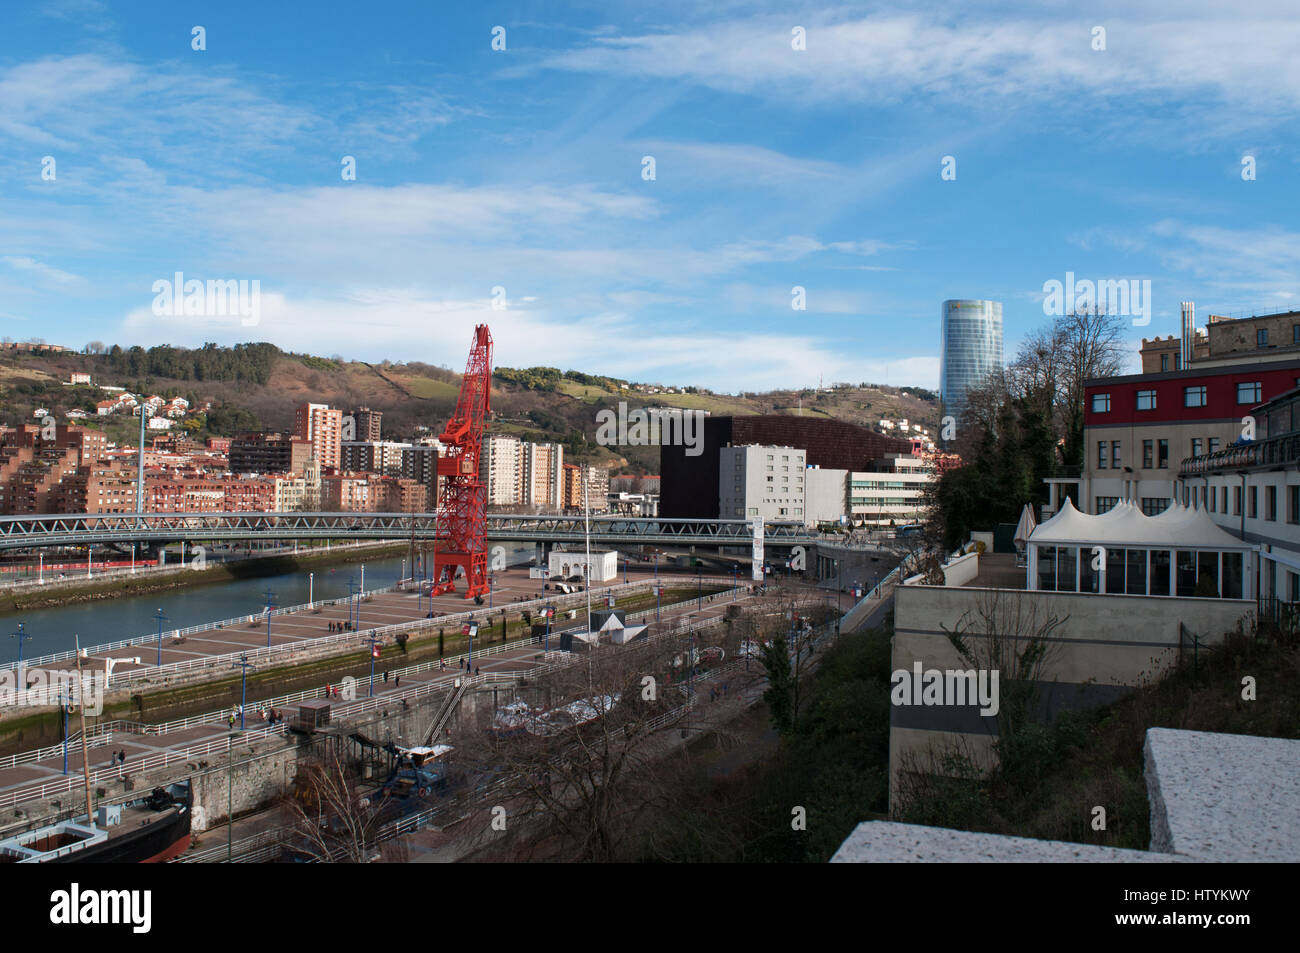 L'horizon de la ville de Bilbao, avec vue sur le Museo Maritimo Ria, le musée maritime situé sur le côté gauche de la rivière Nervion Banque D'Images